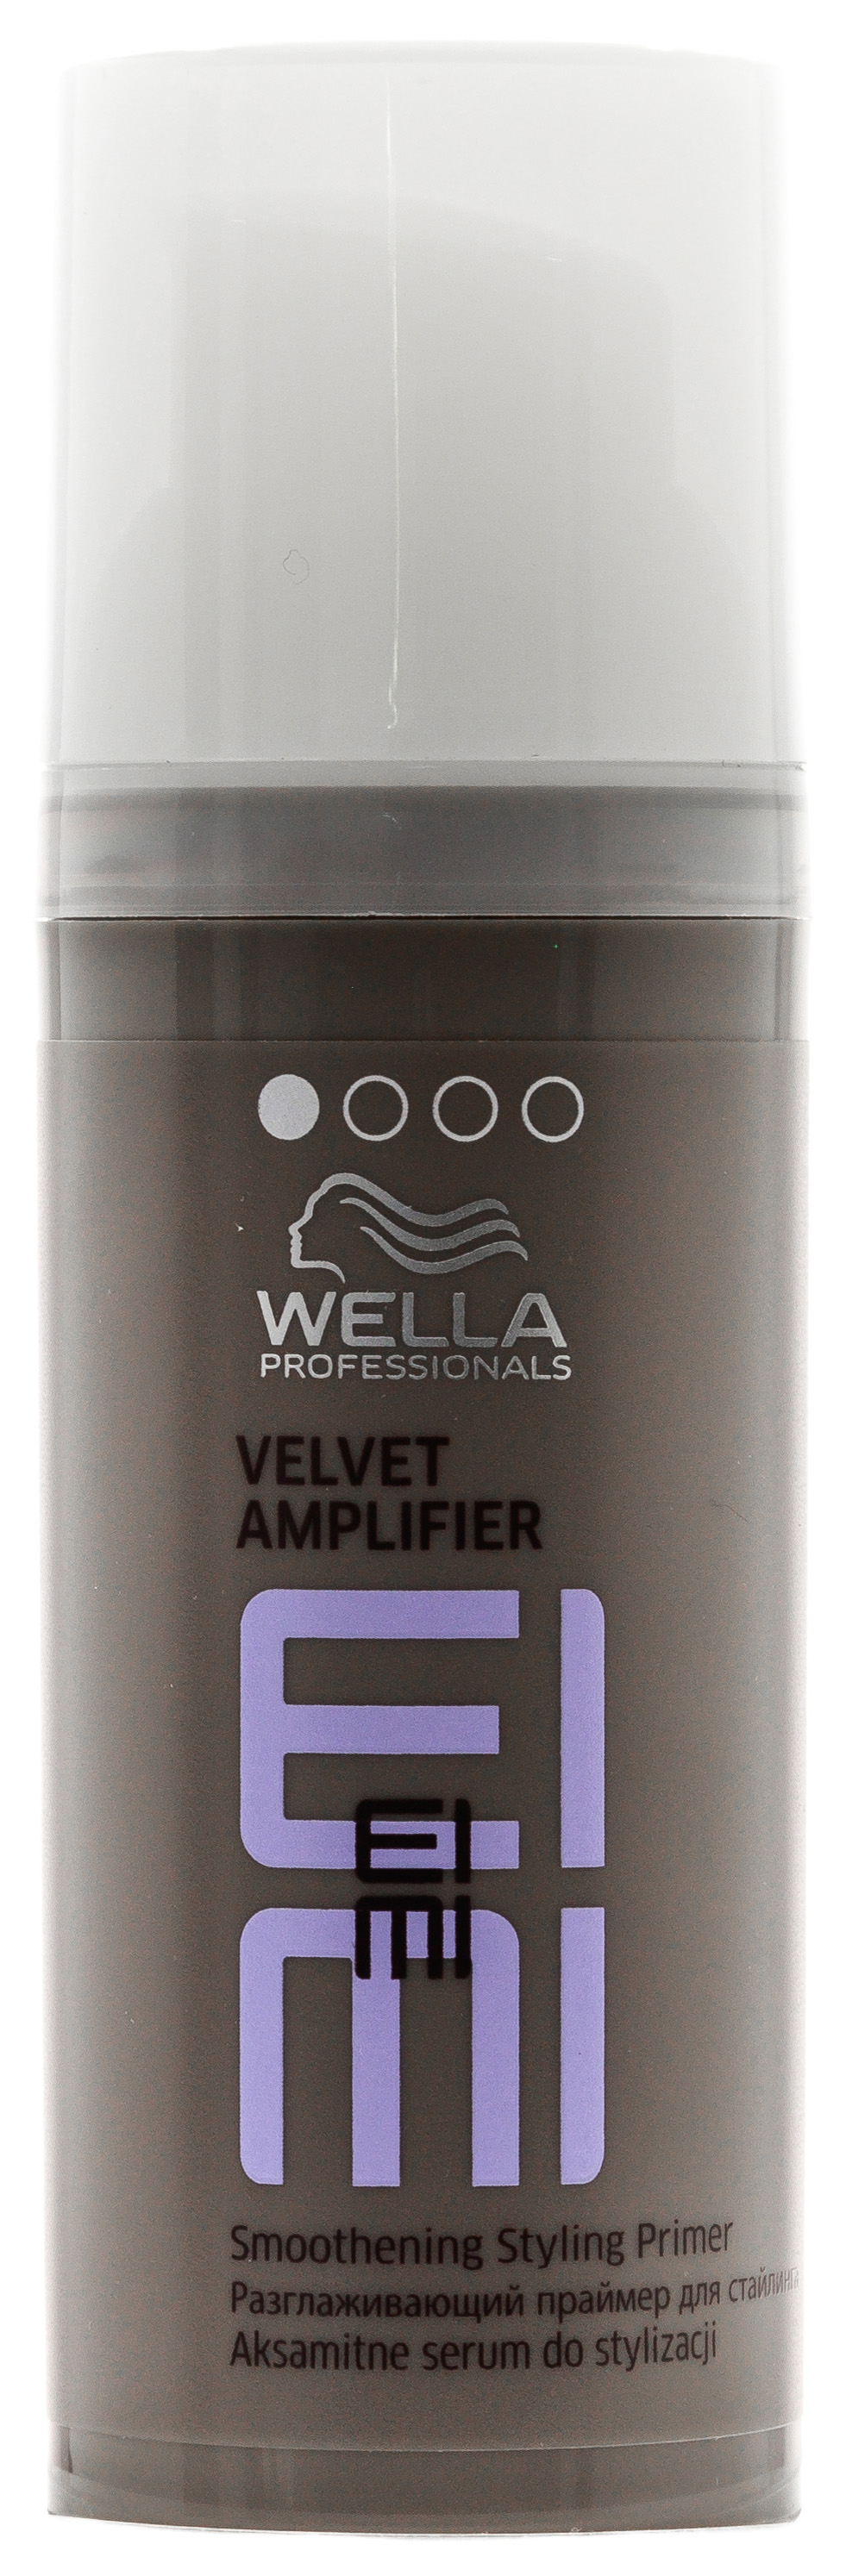 Средство для укладки волос Wella Professionals EIMI Velvet Amplifier 50 мл 100 1000pcs 13001 13002 dip transistor to 92 npn bipolar amplifier transistor